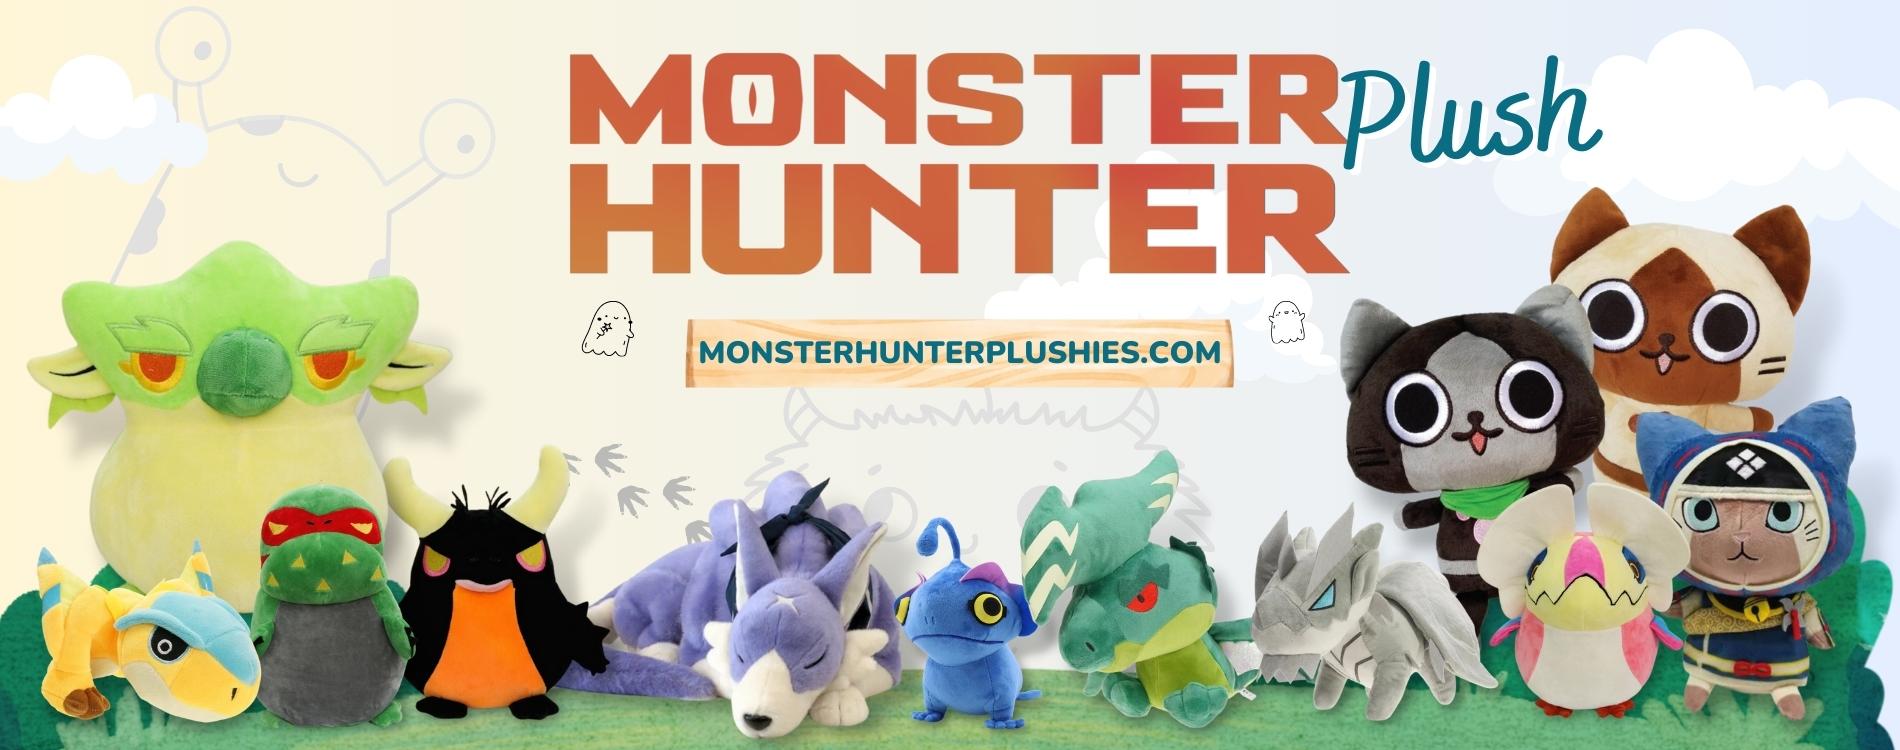 monster hunter plush banner